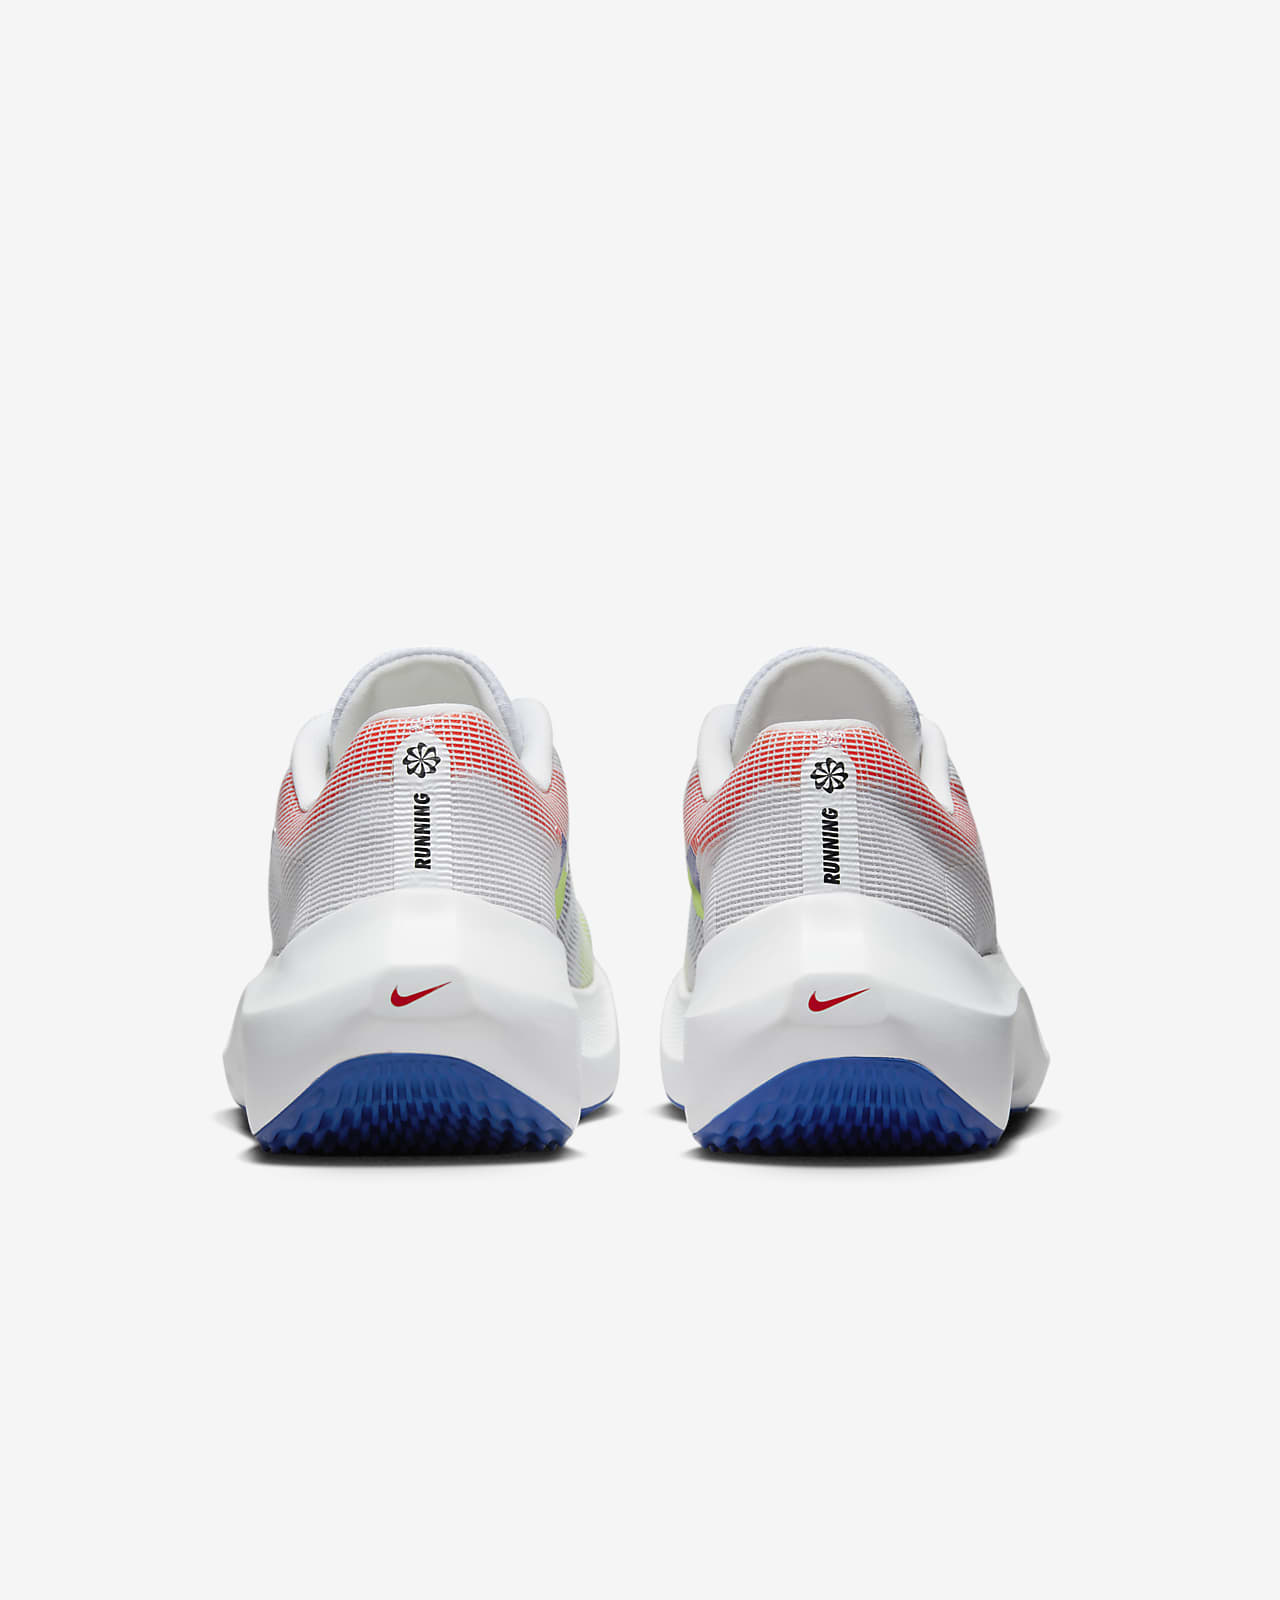 Limpiamente Nuestra compañía Nosotros mismos Nike Zoom Fly 5 Premium Zapatillas de running para asfalto - Hombre. Nike ES